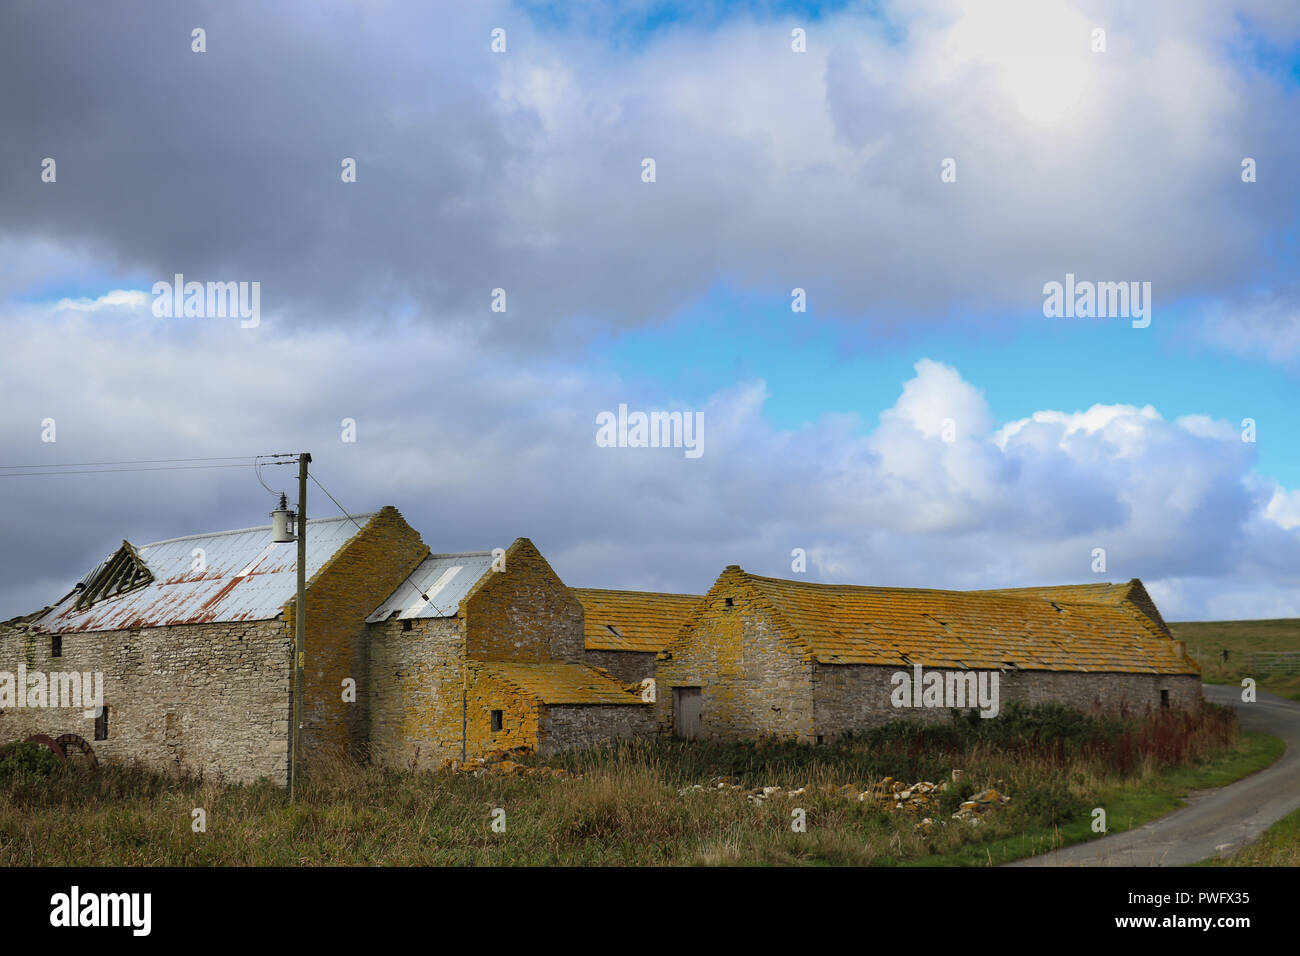 Vieilles granges en pierre avec des toits couverts de lichen jaune, sous un ciel bleu avec des nuages blancs qui ondulent, herbe verte, sur l'île de Rousay, Orkney, Scotland Banque D'Images